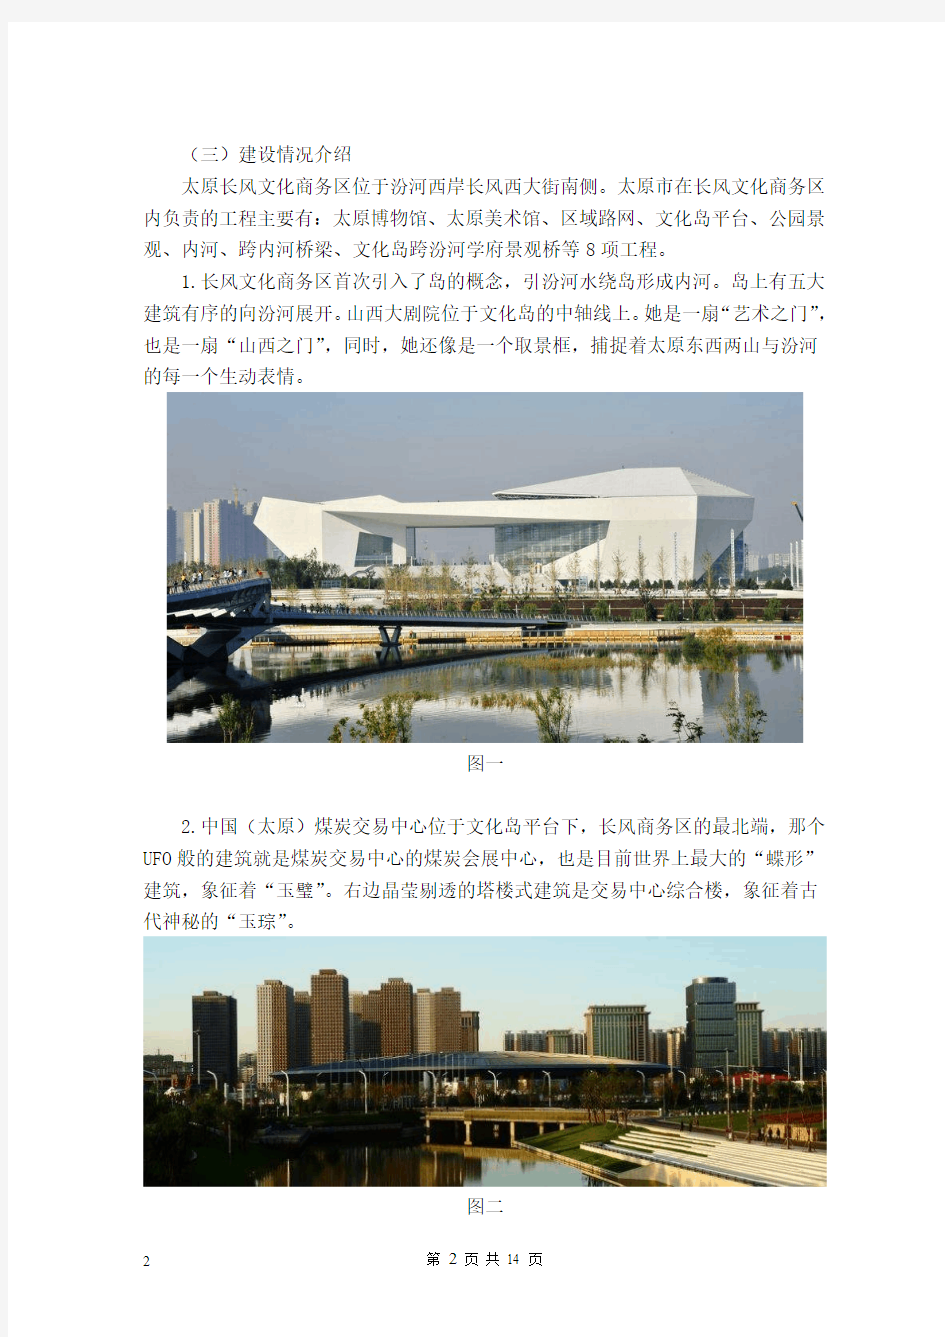 关于太原市长风文化商务区建设的调查报告全解